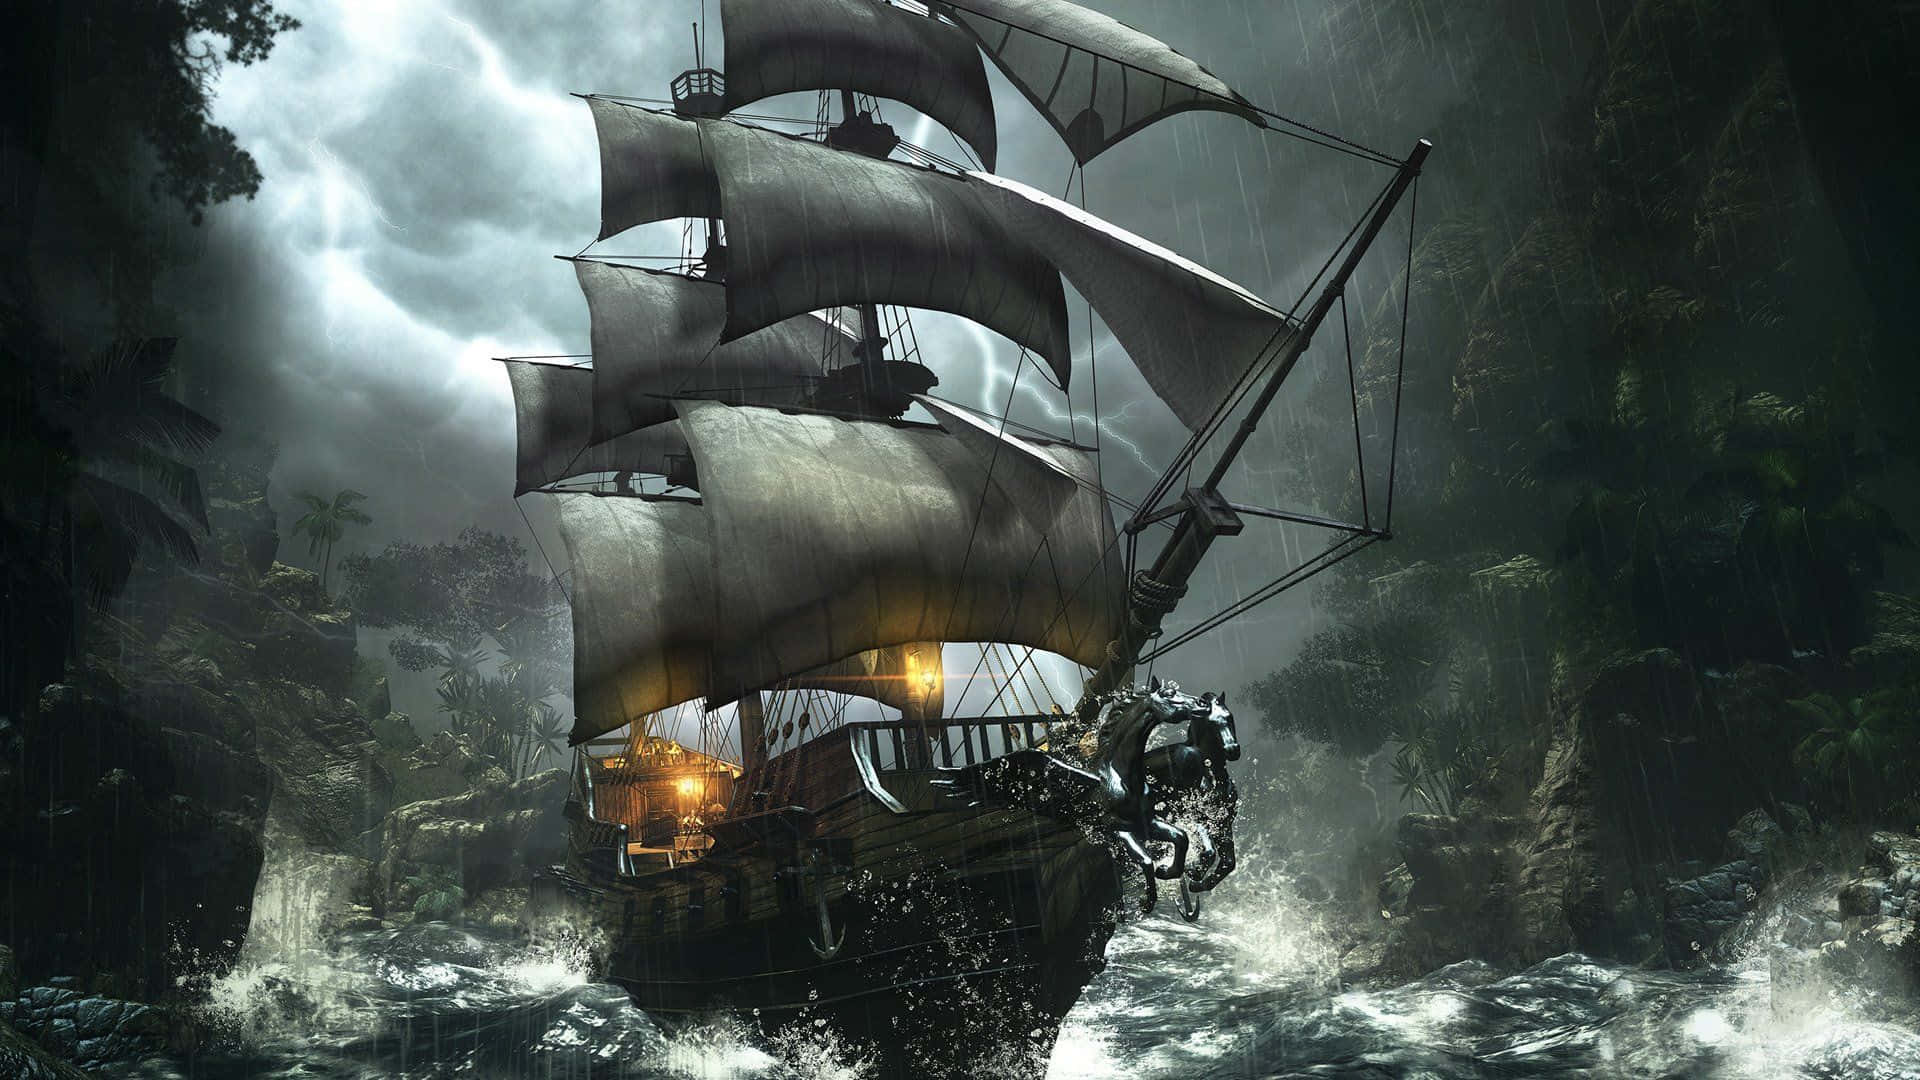 Vivila Vita Come Un Pirata - Senza Paura, Audace E Piena Di Avventure